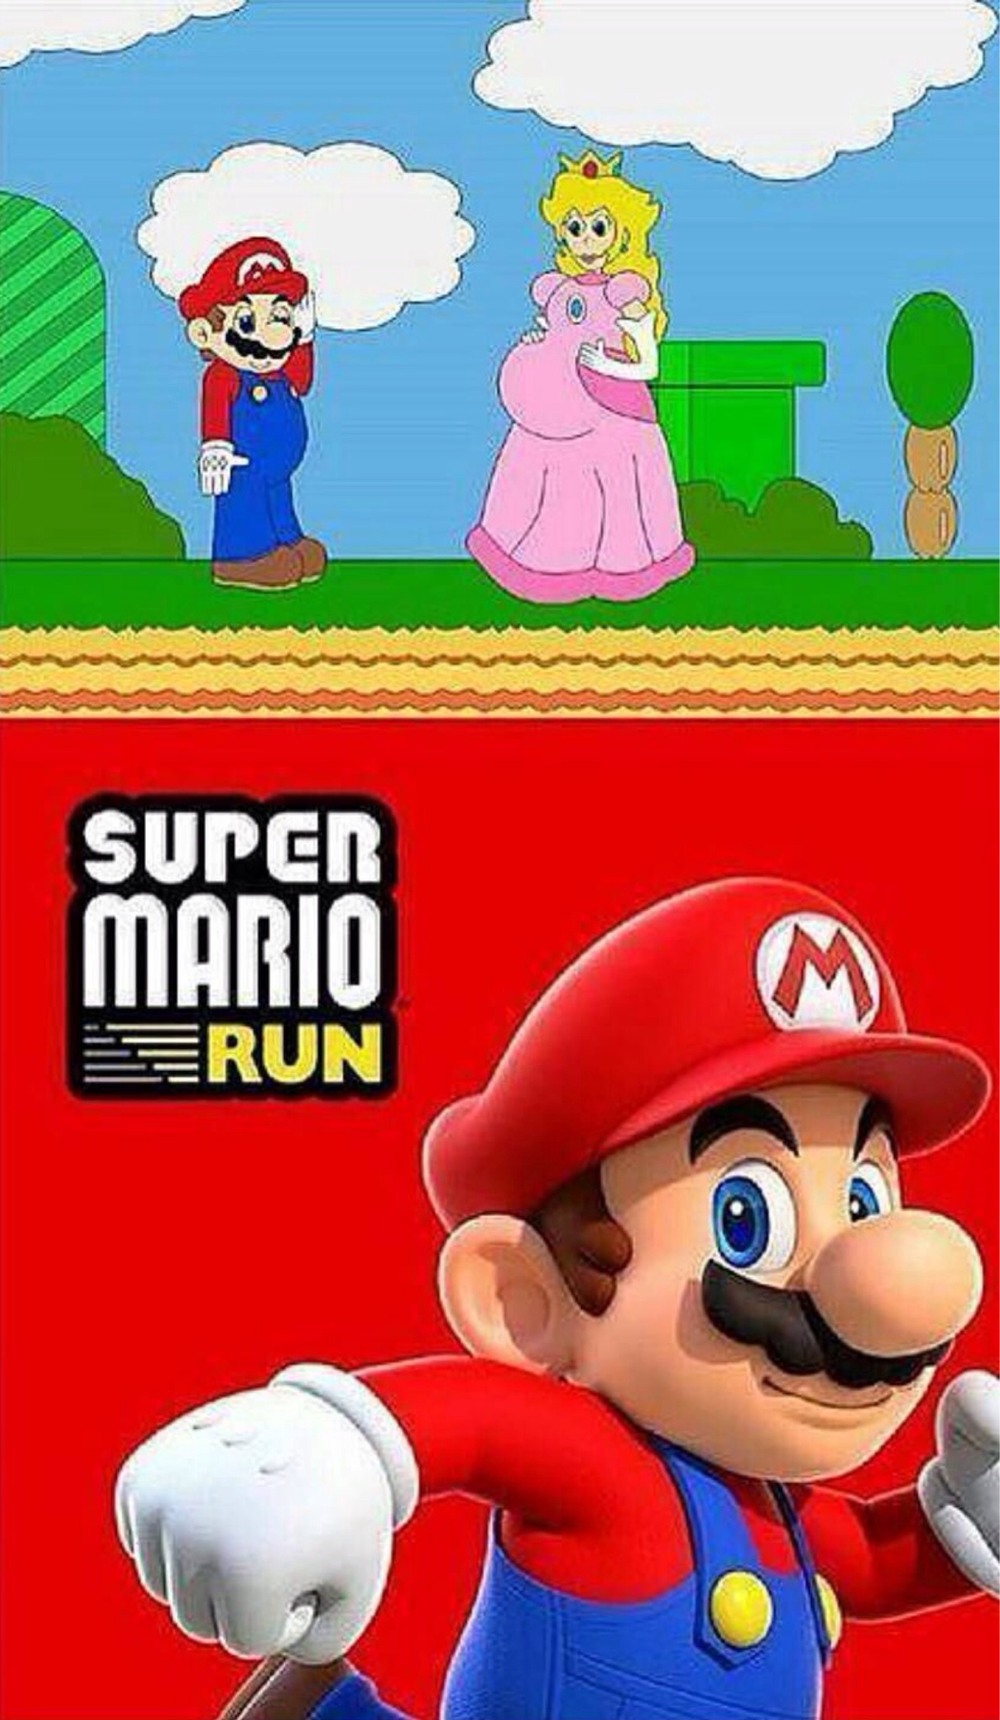 run Mario run - meme